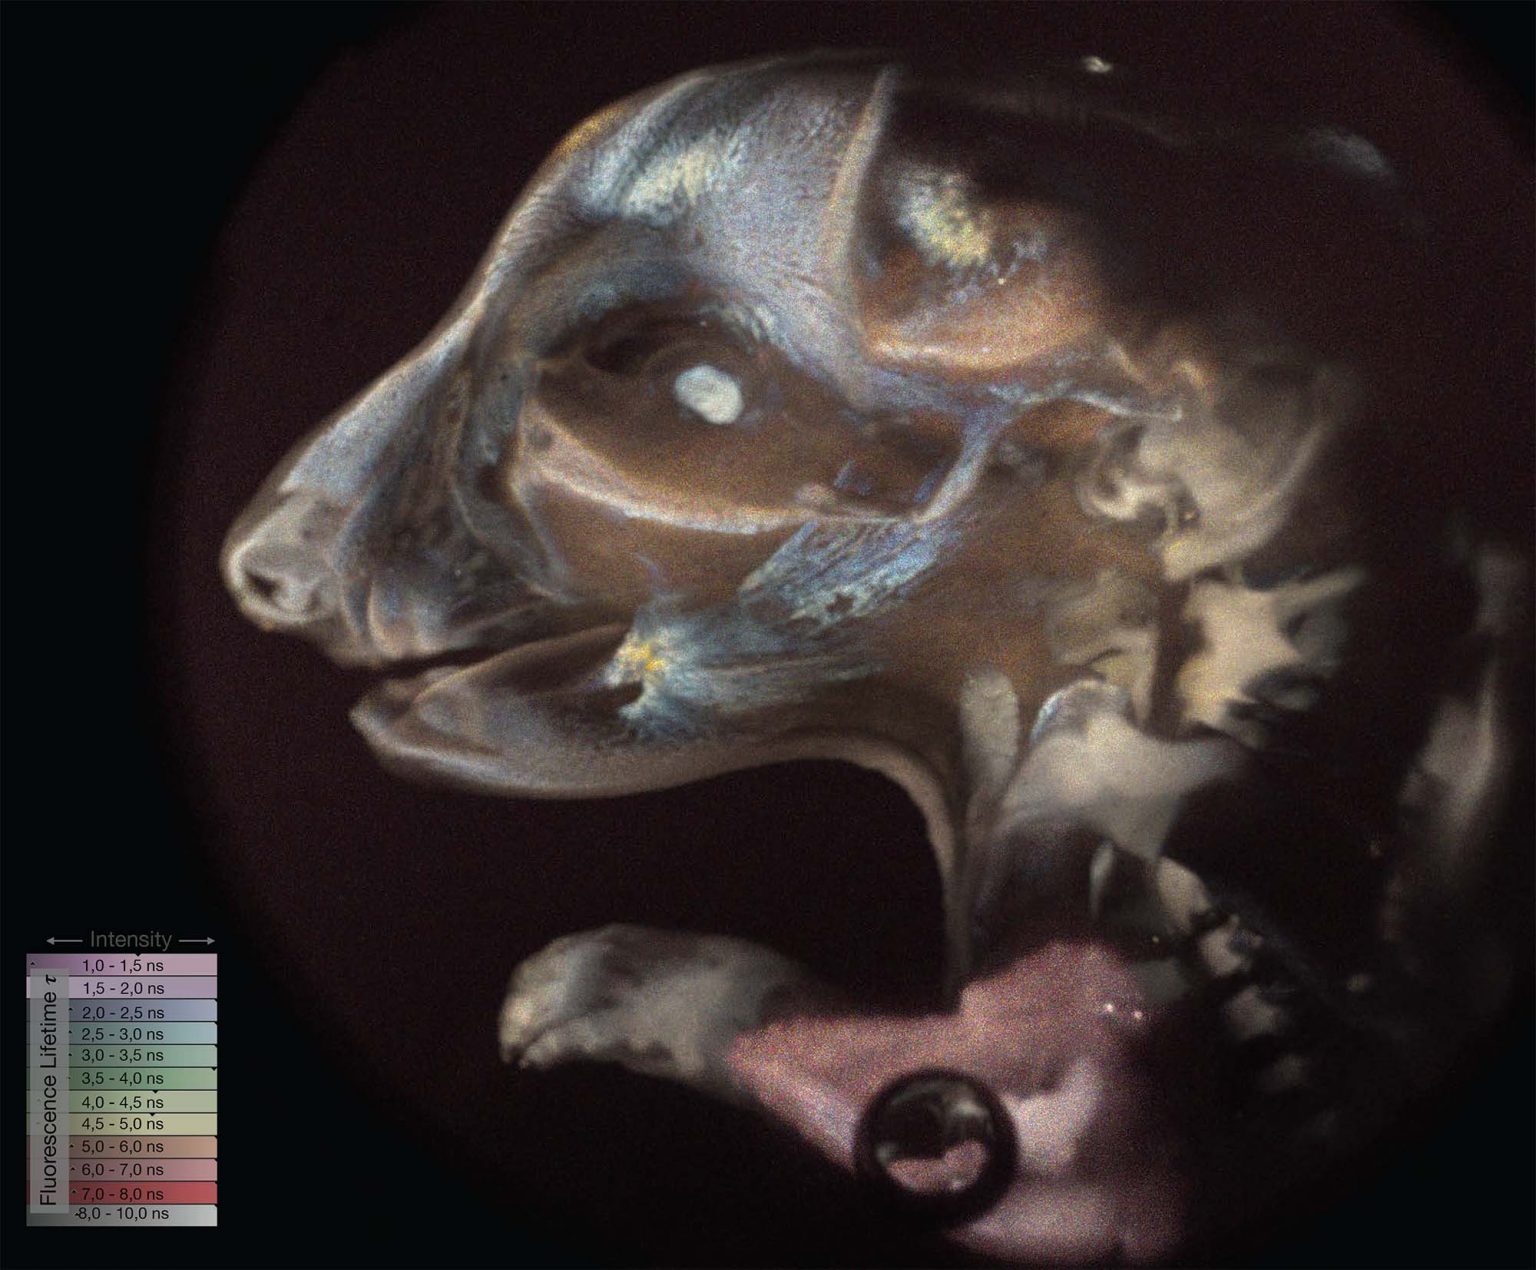 ライトシート顕微鏡で撮影されたラットの胚